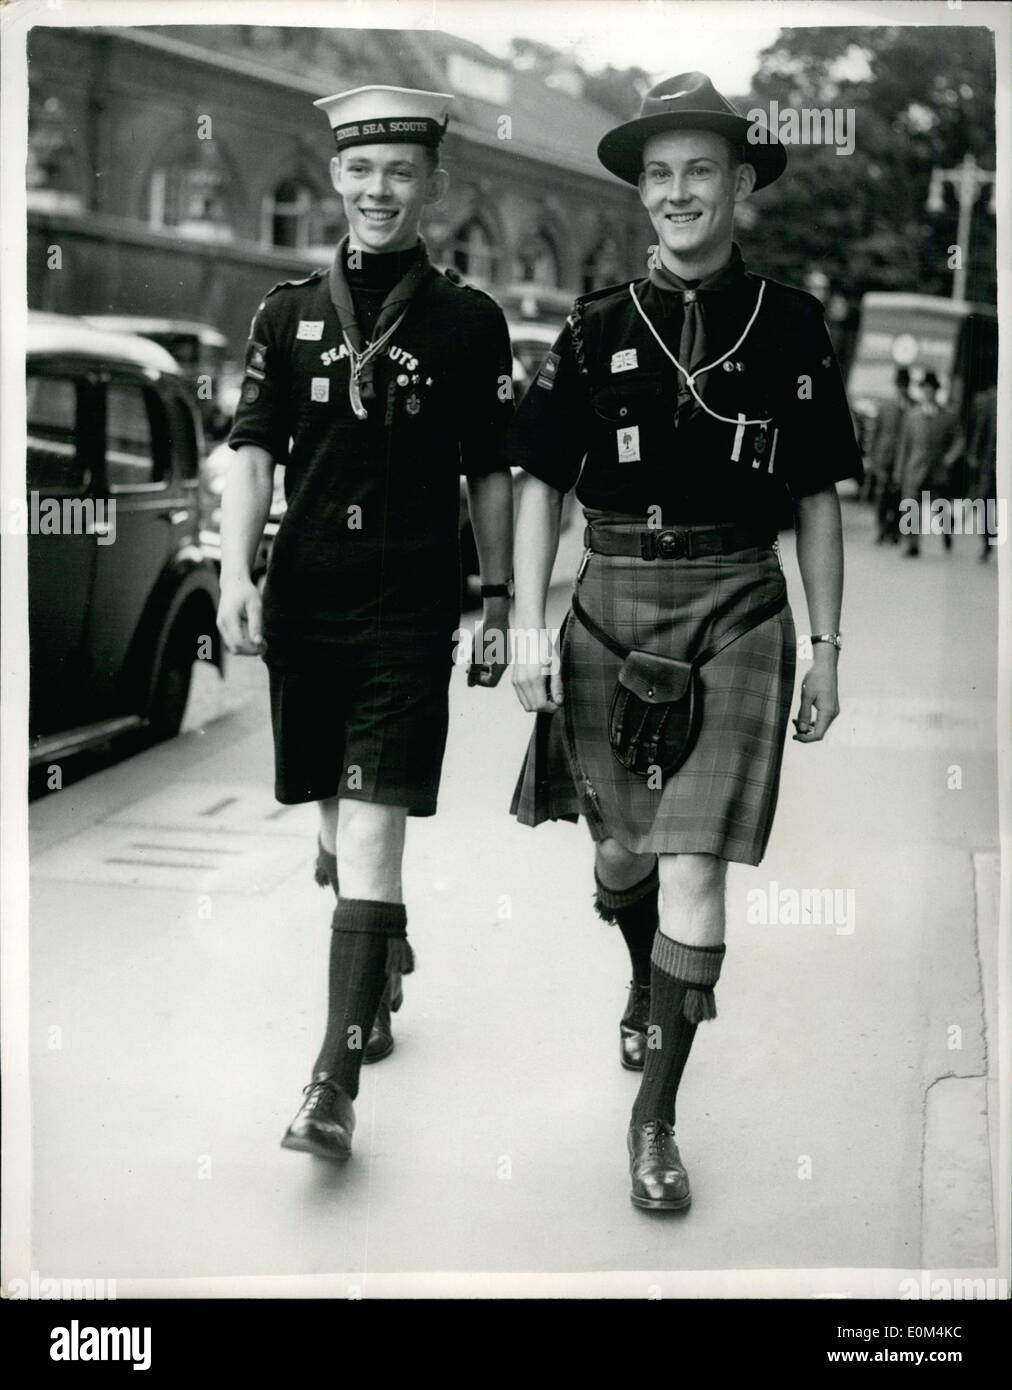 Juillet 07, 1953 - Trop de Scouts de la Reine pour les États-Unis : La Reine deux Scouts qui ont été choisis parmi de nombreux demandeurs de payer un sir visite d'une semaine à l'United States, quitter Waterloo cet après-midi. Les deux scouts, qui naviguent dans le Queen Elizabeth demain, sont Alan Barrie, du 29. Groupe de Glasgow, 17 ans, étudiante à l'université (dentaire), de Glasgow, et Geoffrey T. Woodward du 5e Groupe d'Eastbourne, 16 ans, étudiant à l'école de grammaire d'Eastbourne, qui vit à Eastbourne, Sussex Banque D'Images